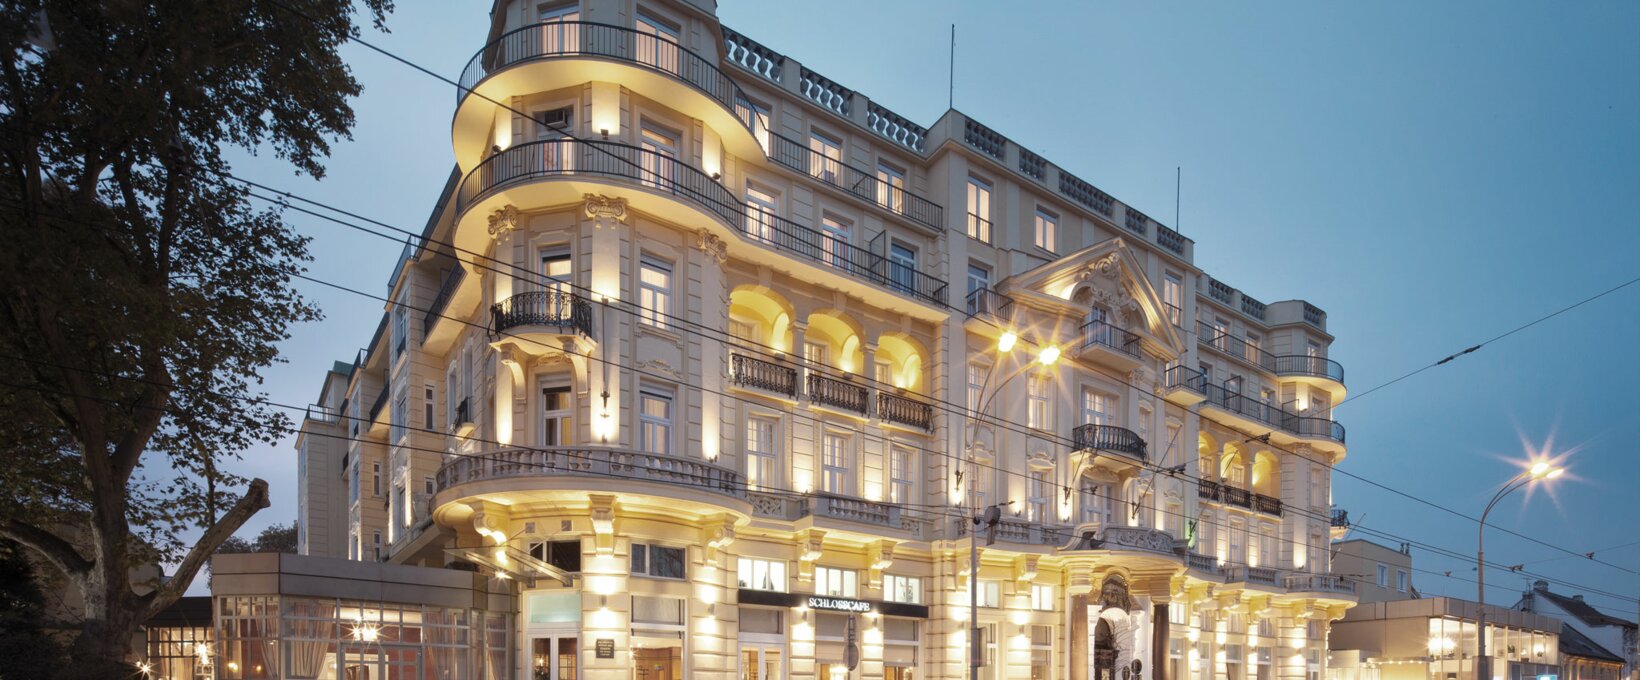 Außenansicht Hotelgebäude | Parkhotel Schönbrunn in Wien